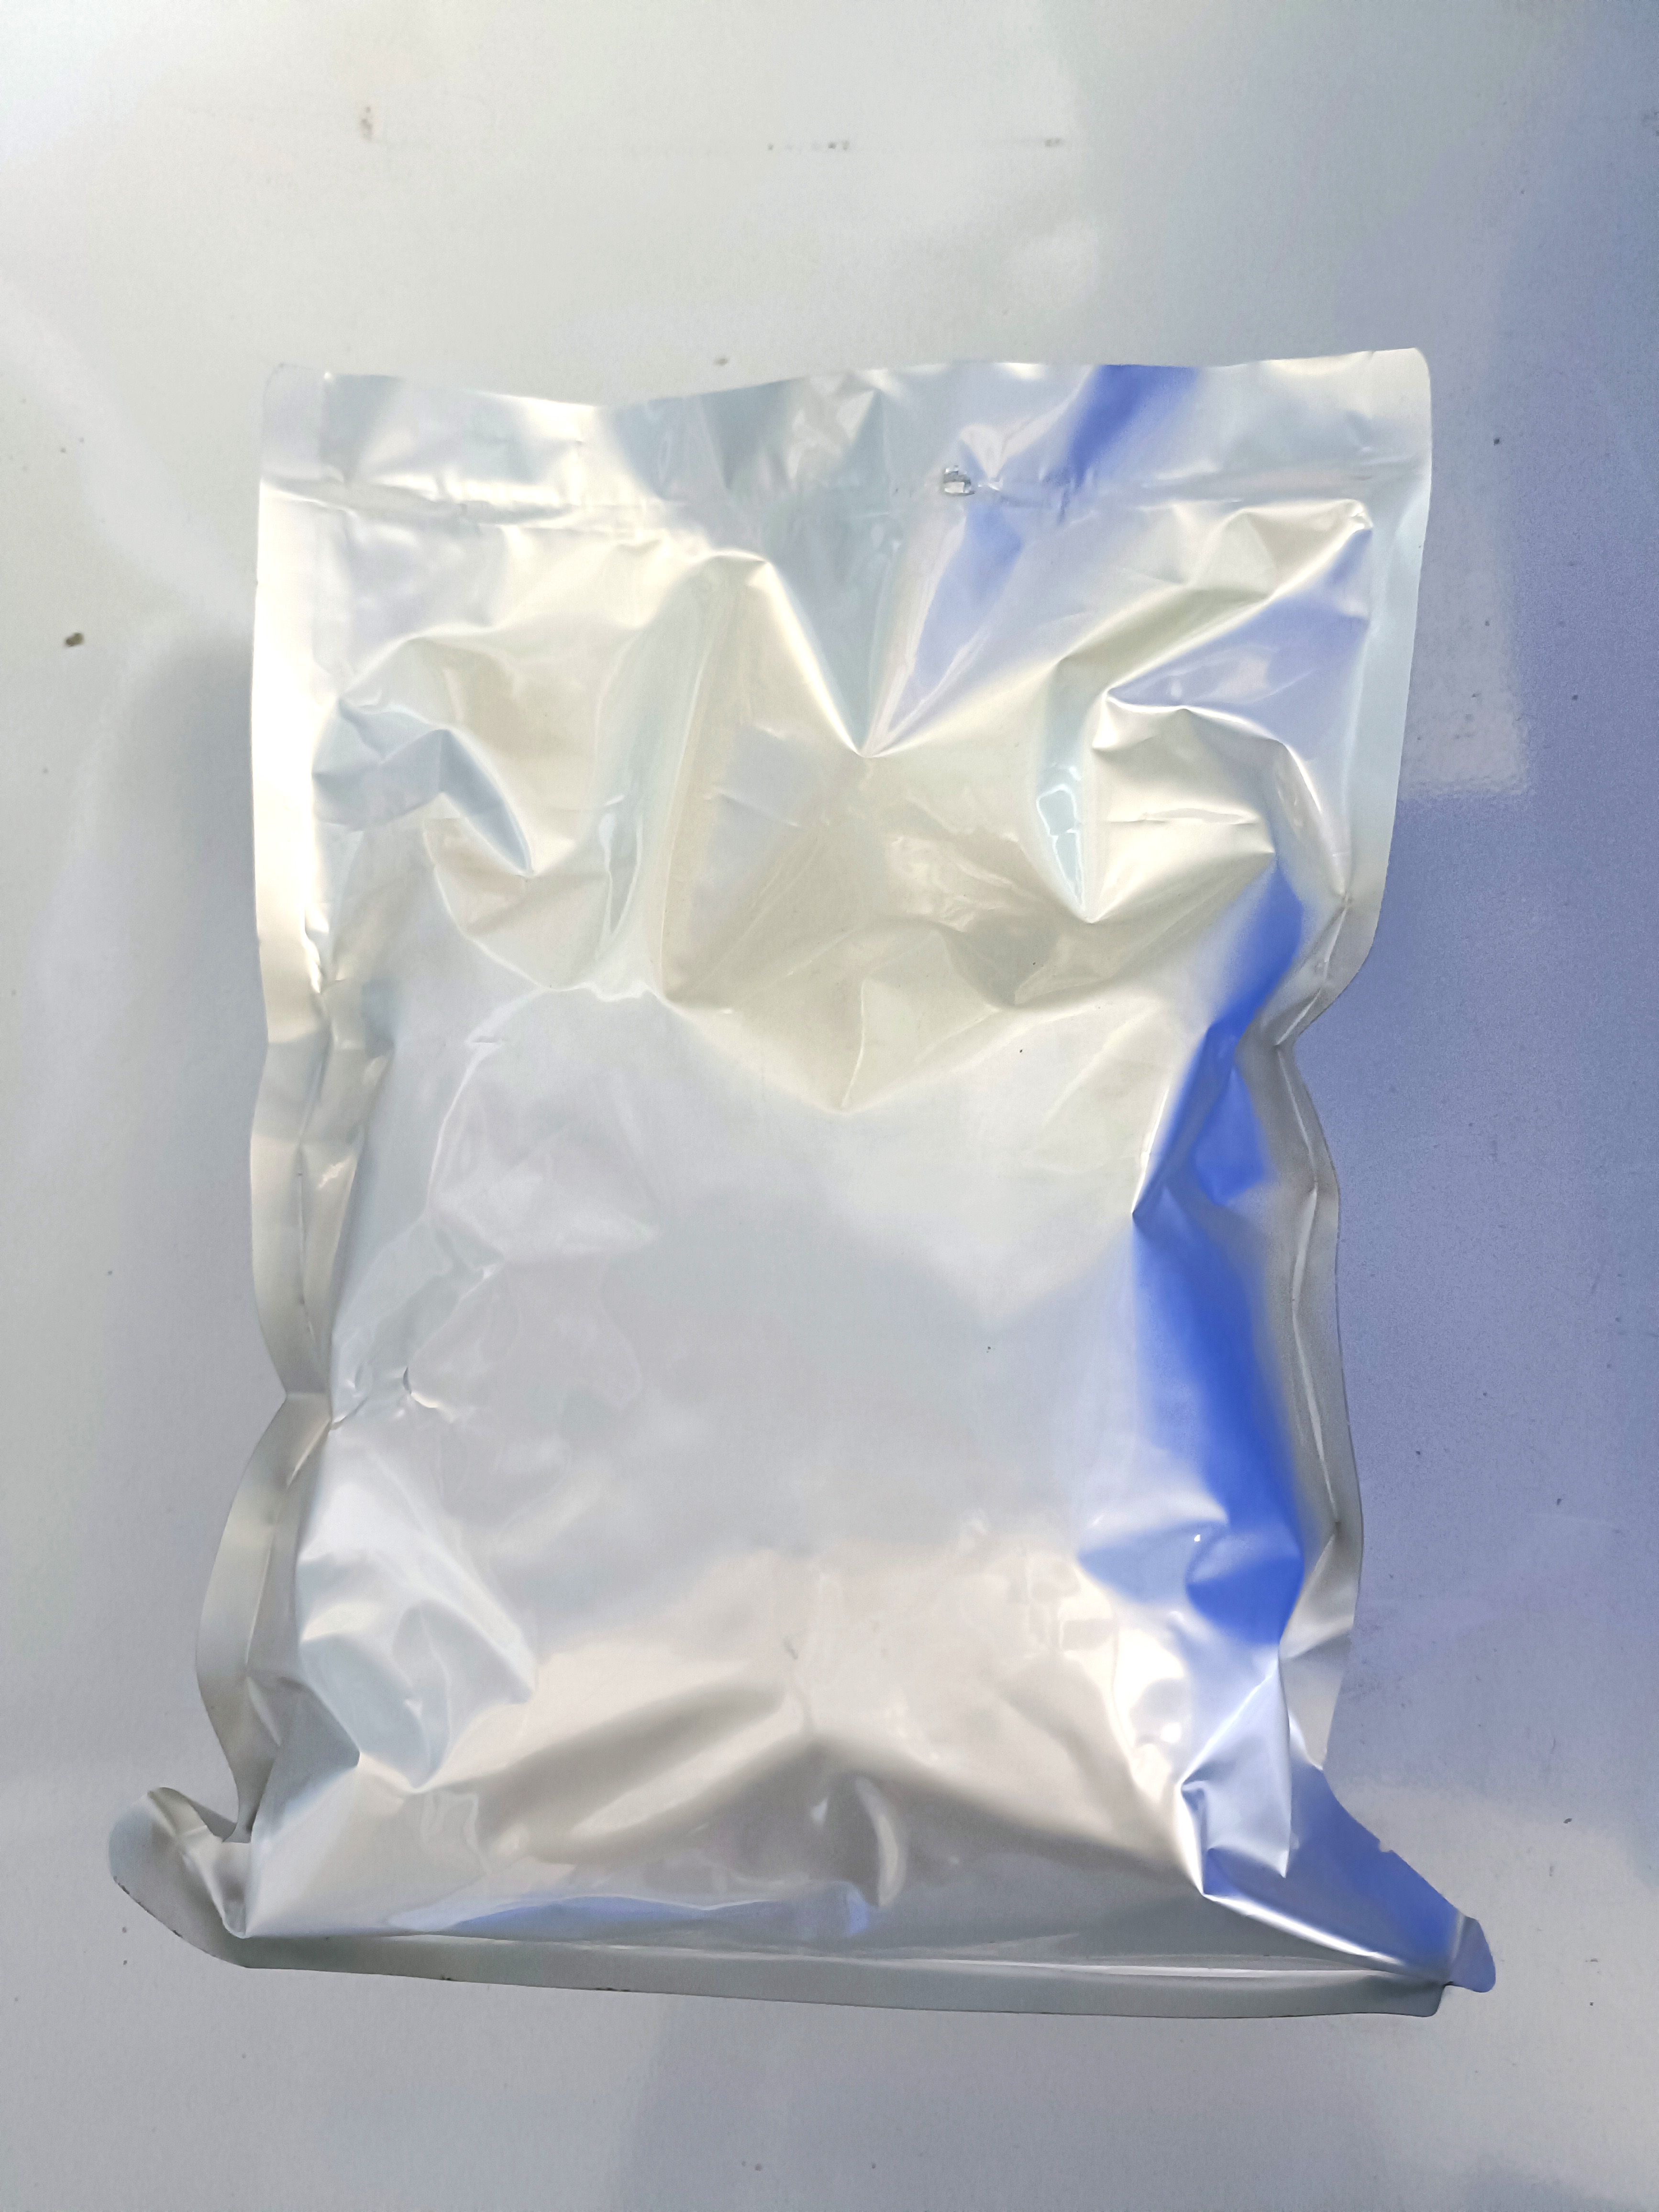 White Powder 1,3-Dihydroxyacetone CAS 96-26-4